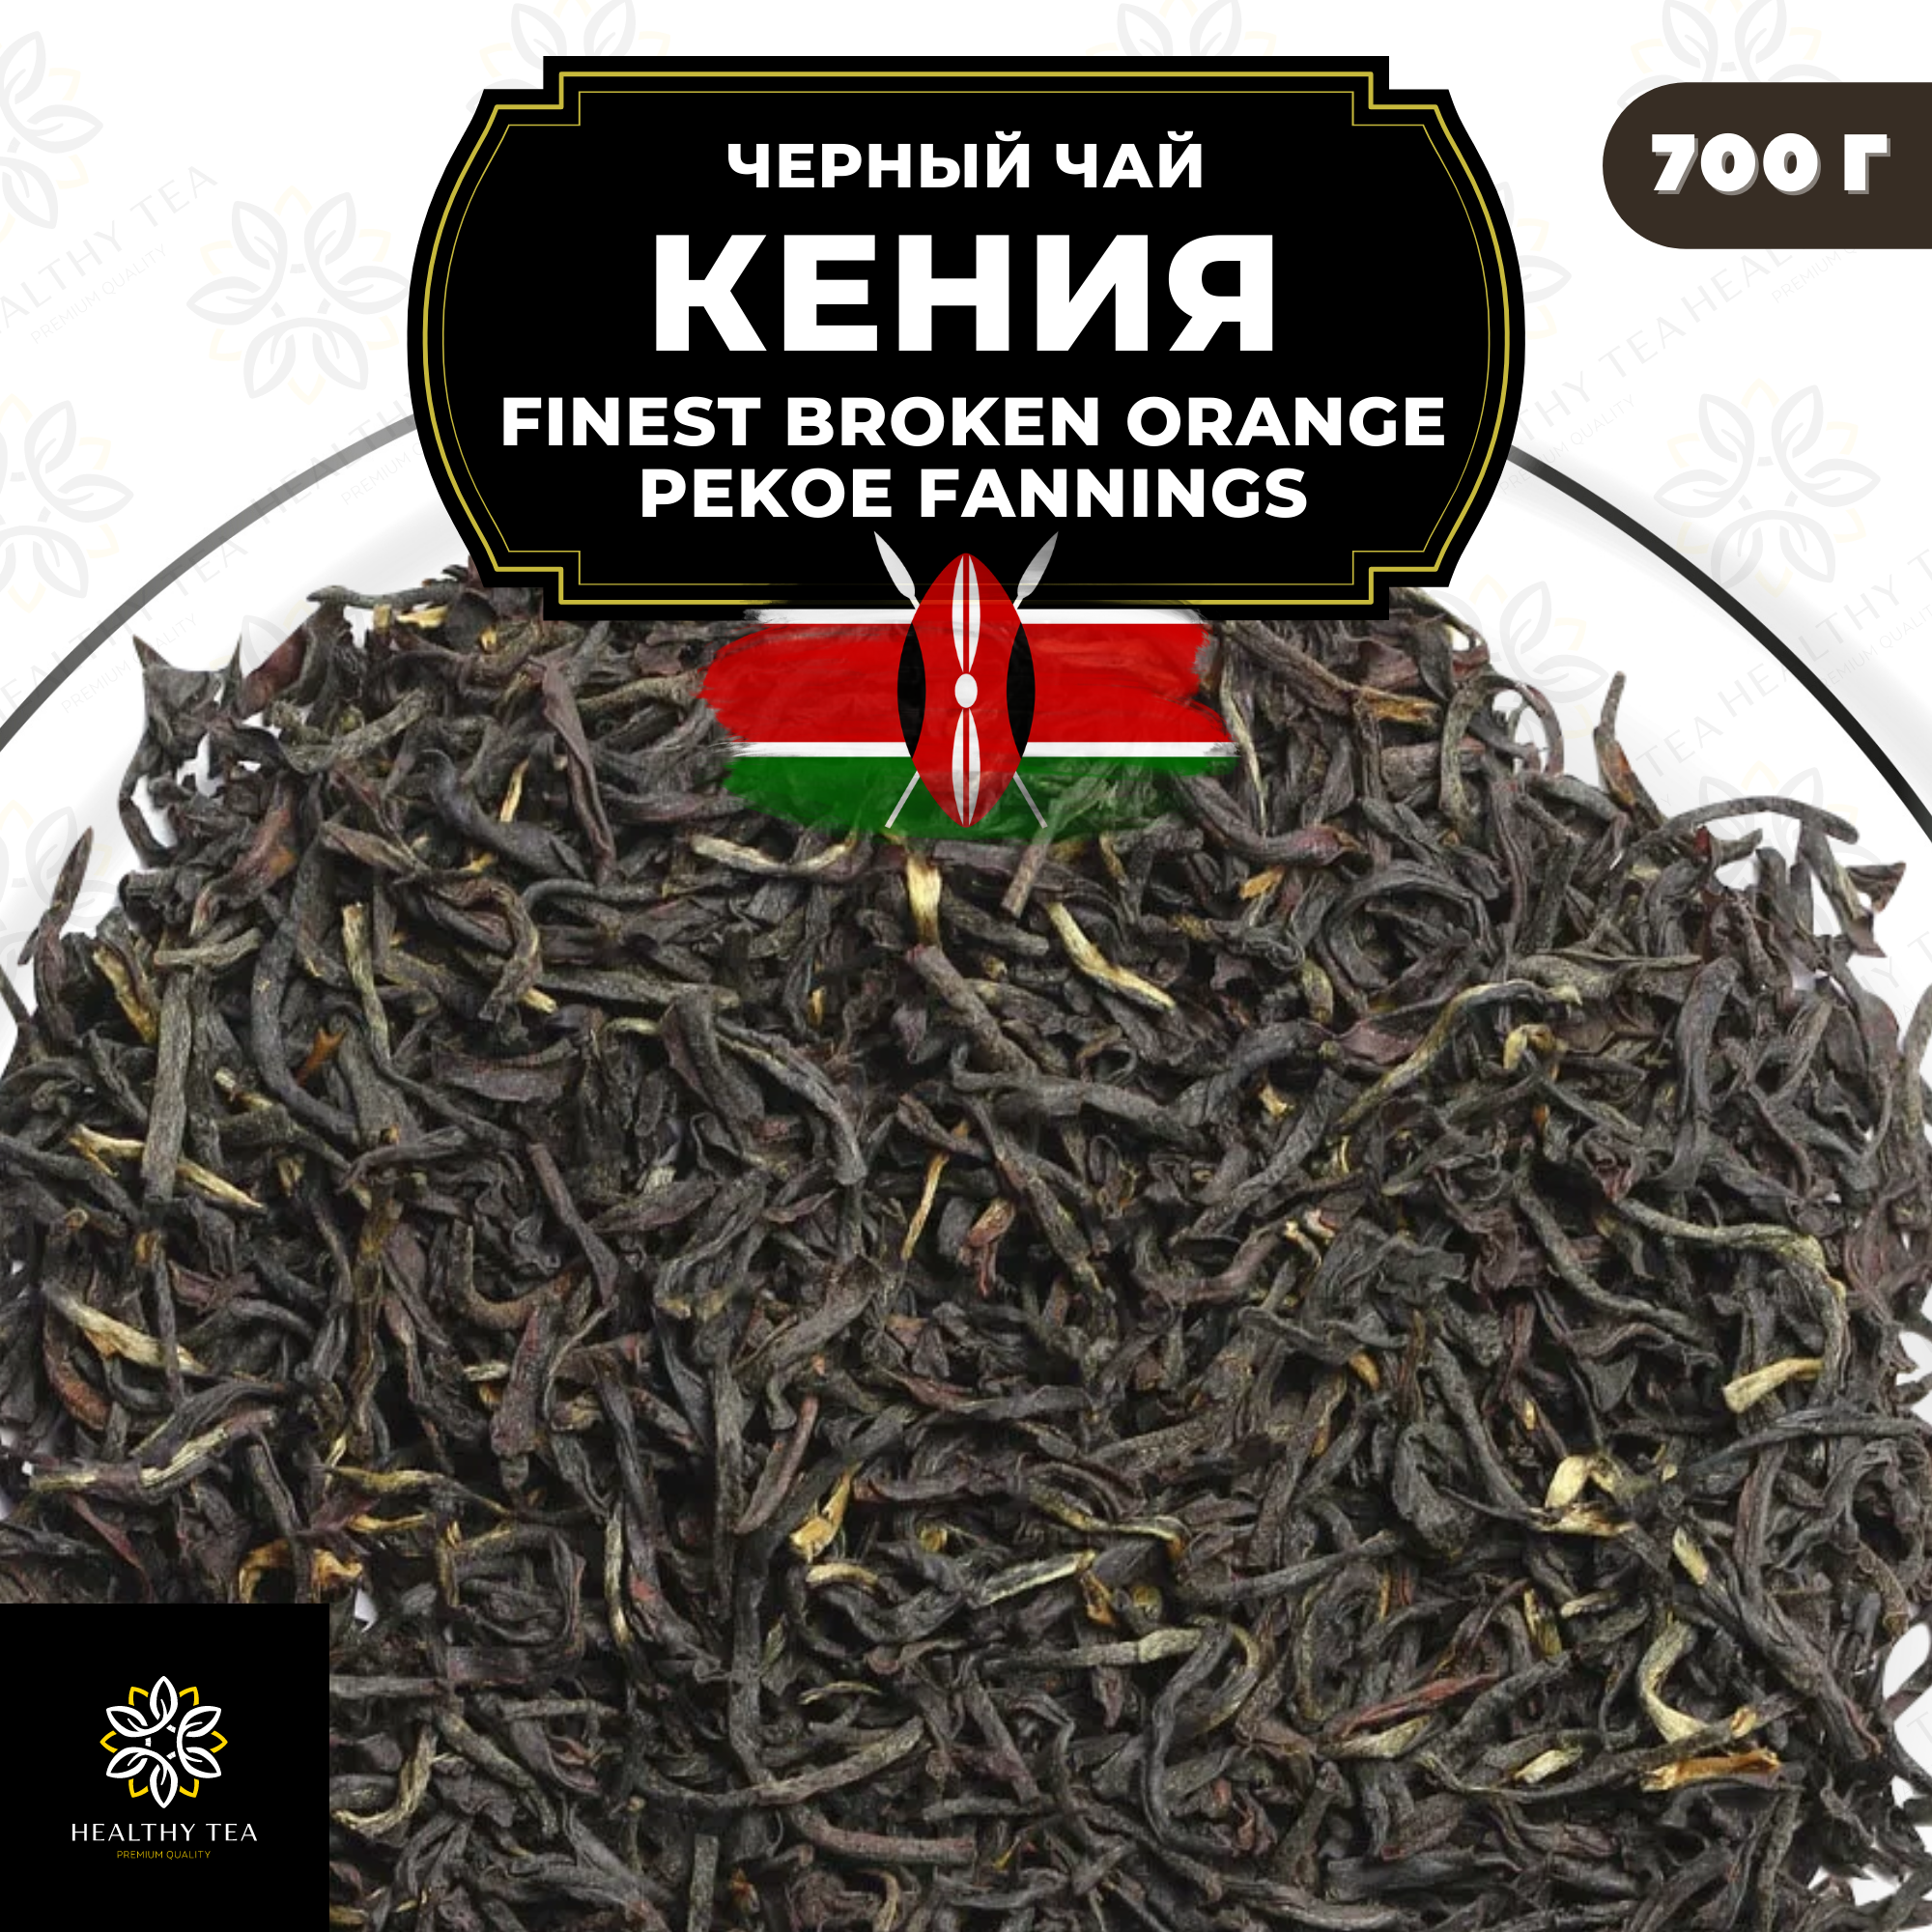 Кенийский Черный чай Кения (FBOPF среднелистовой с типсами) Полезный чай / HEALTHY TEA, 700 гр